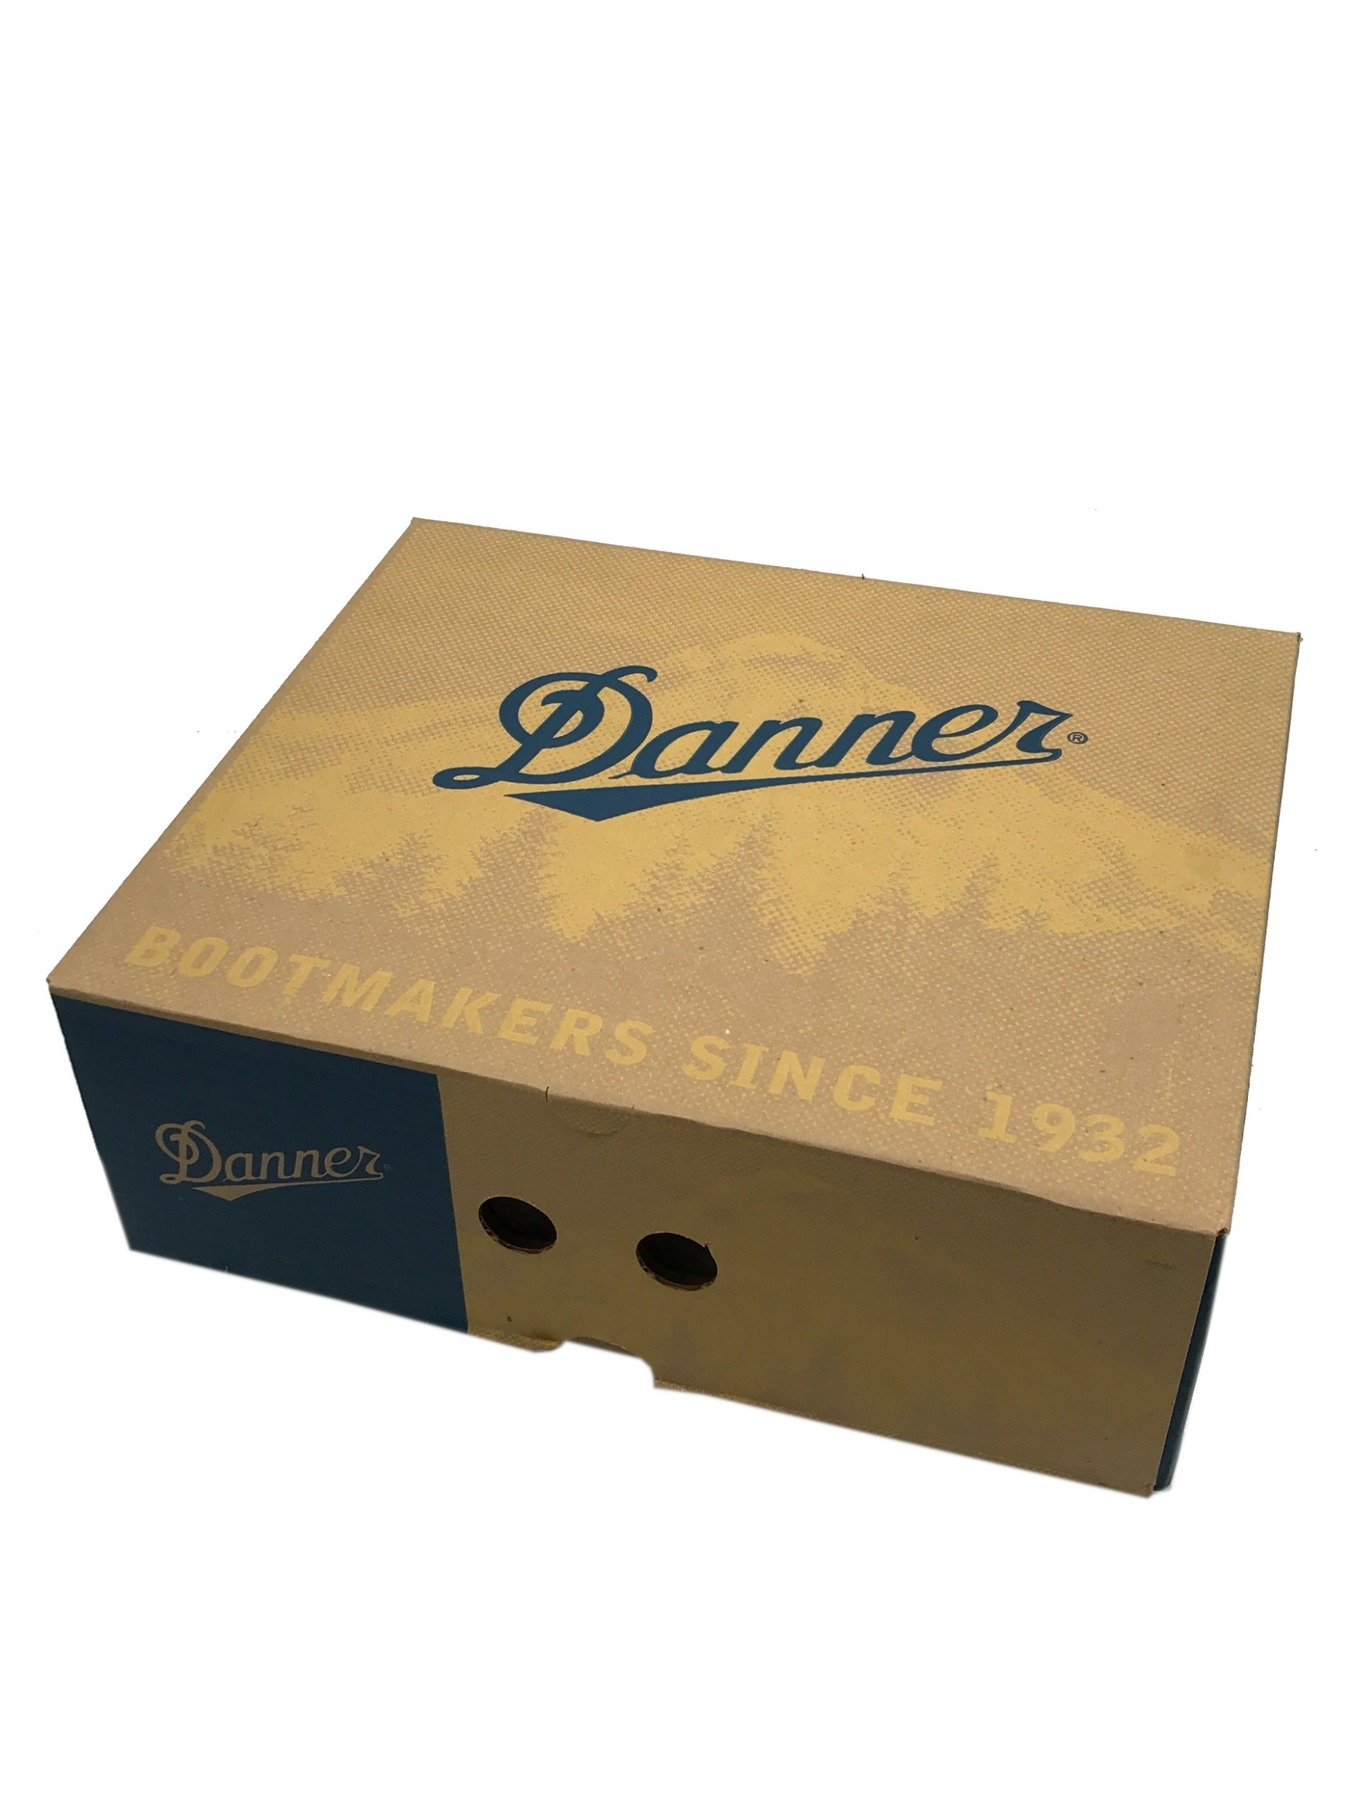 ラッピング無料】 DANNER 非売品木製サインボード ダナー ブーツ